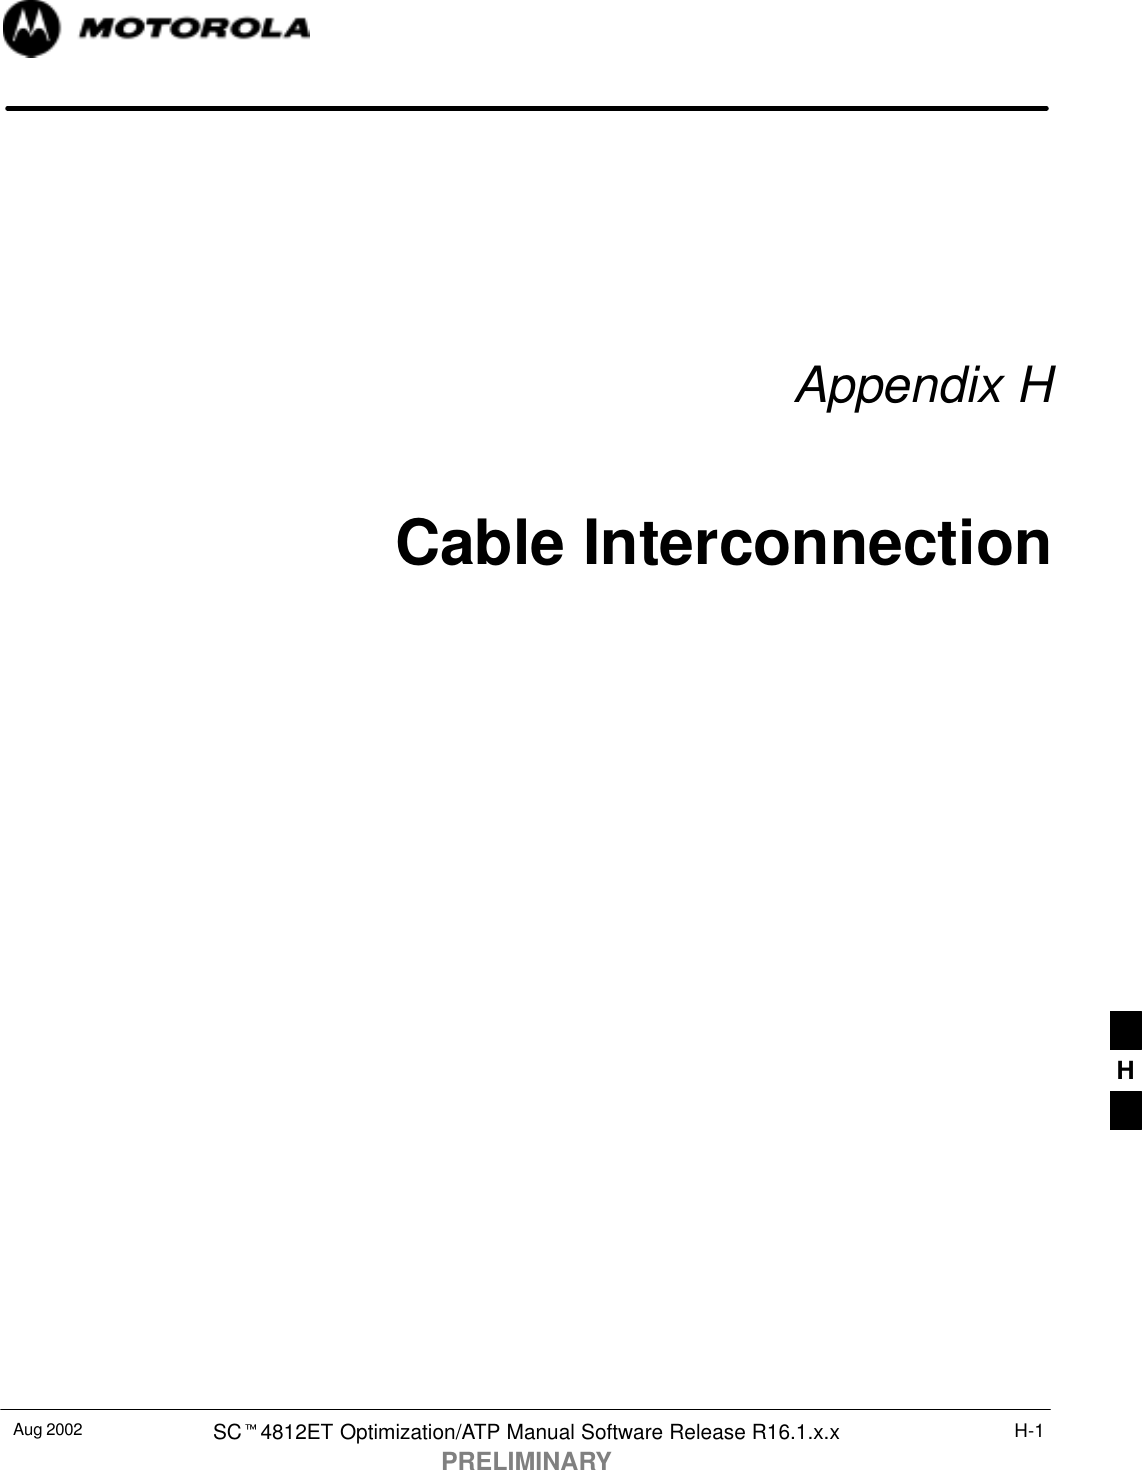 Aug 2002 SC4812ET Optimization/ATP Manual Software Release R16.1.x.xPRELIMINARYH-1Appendix HCable InterconnectionH